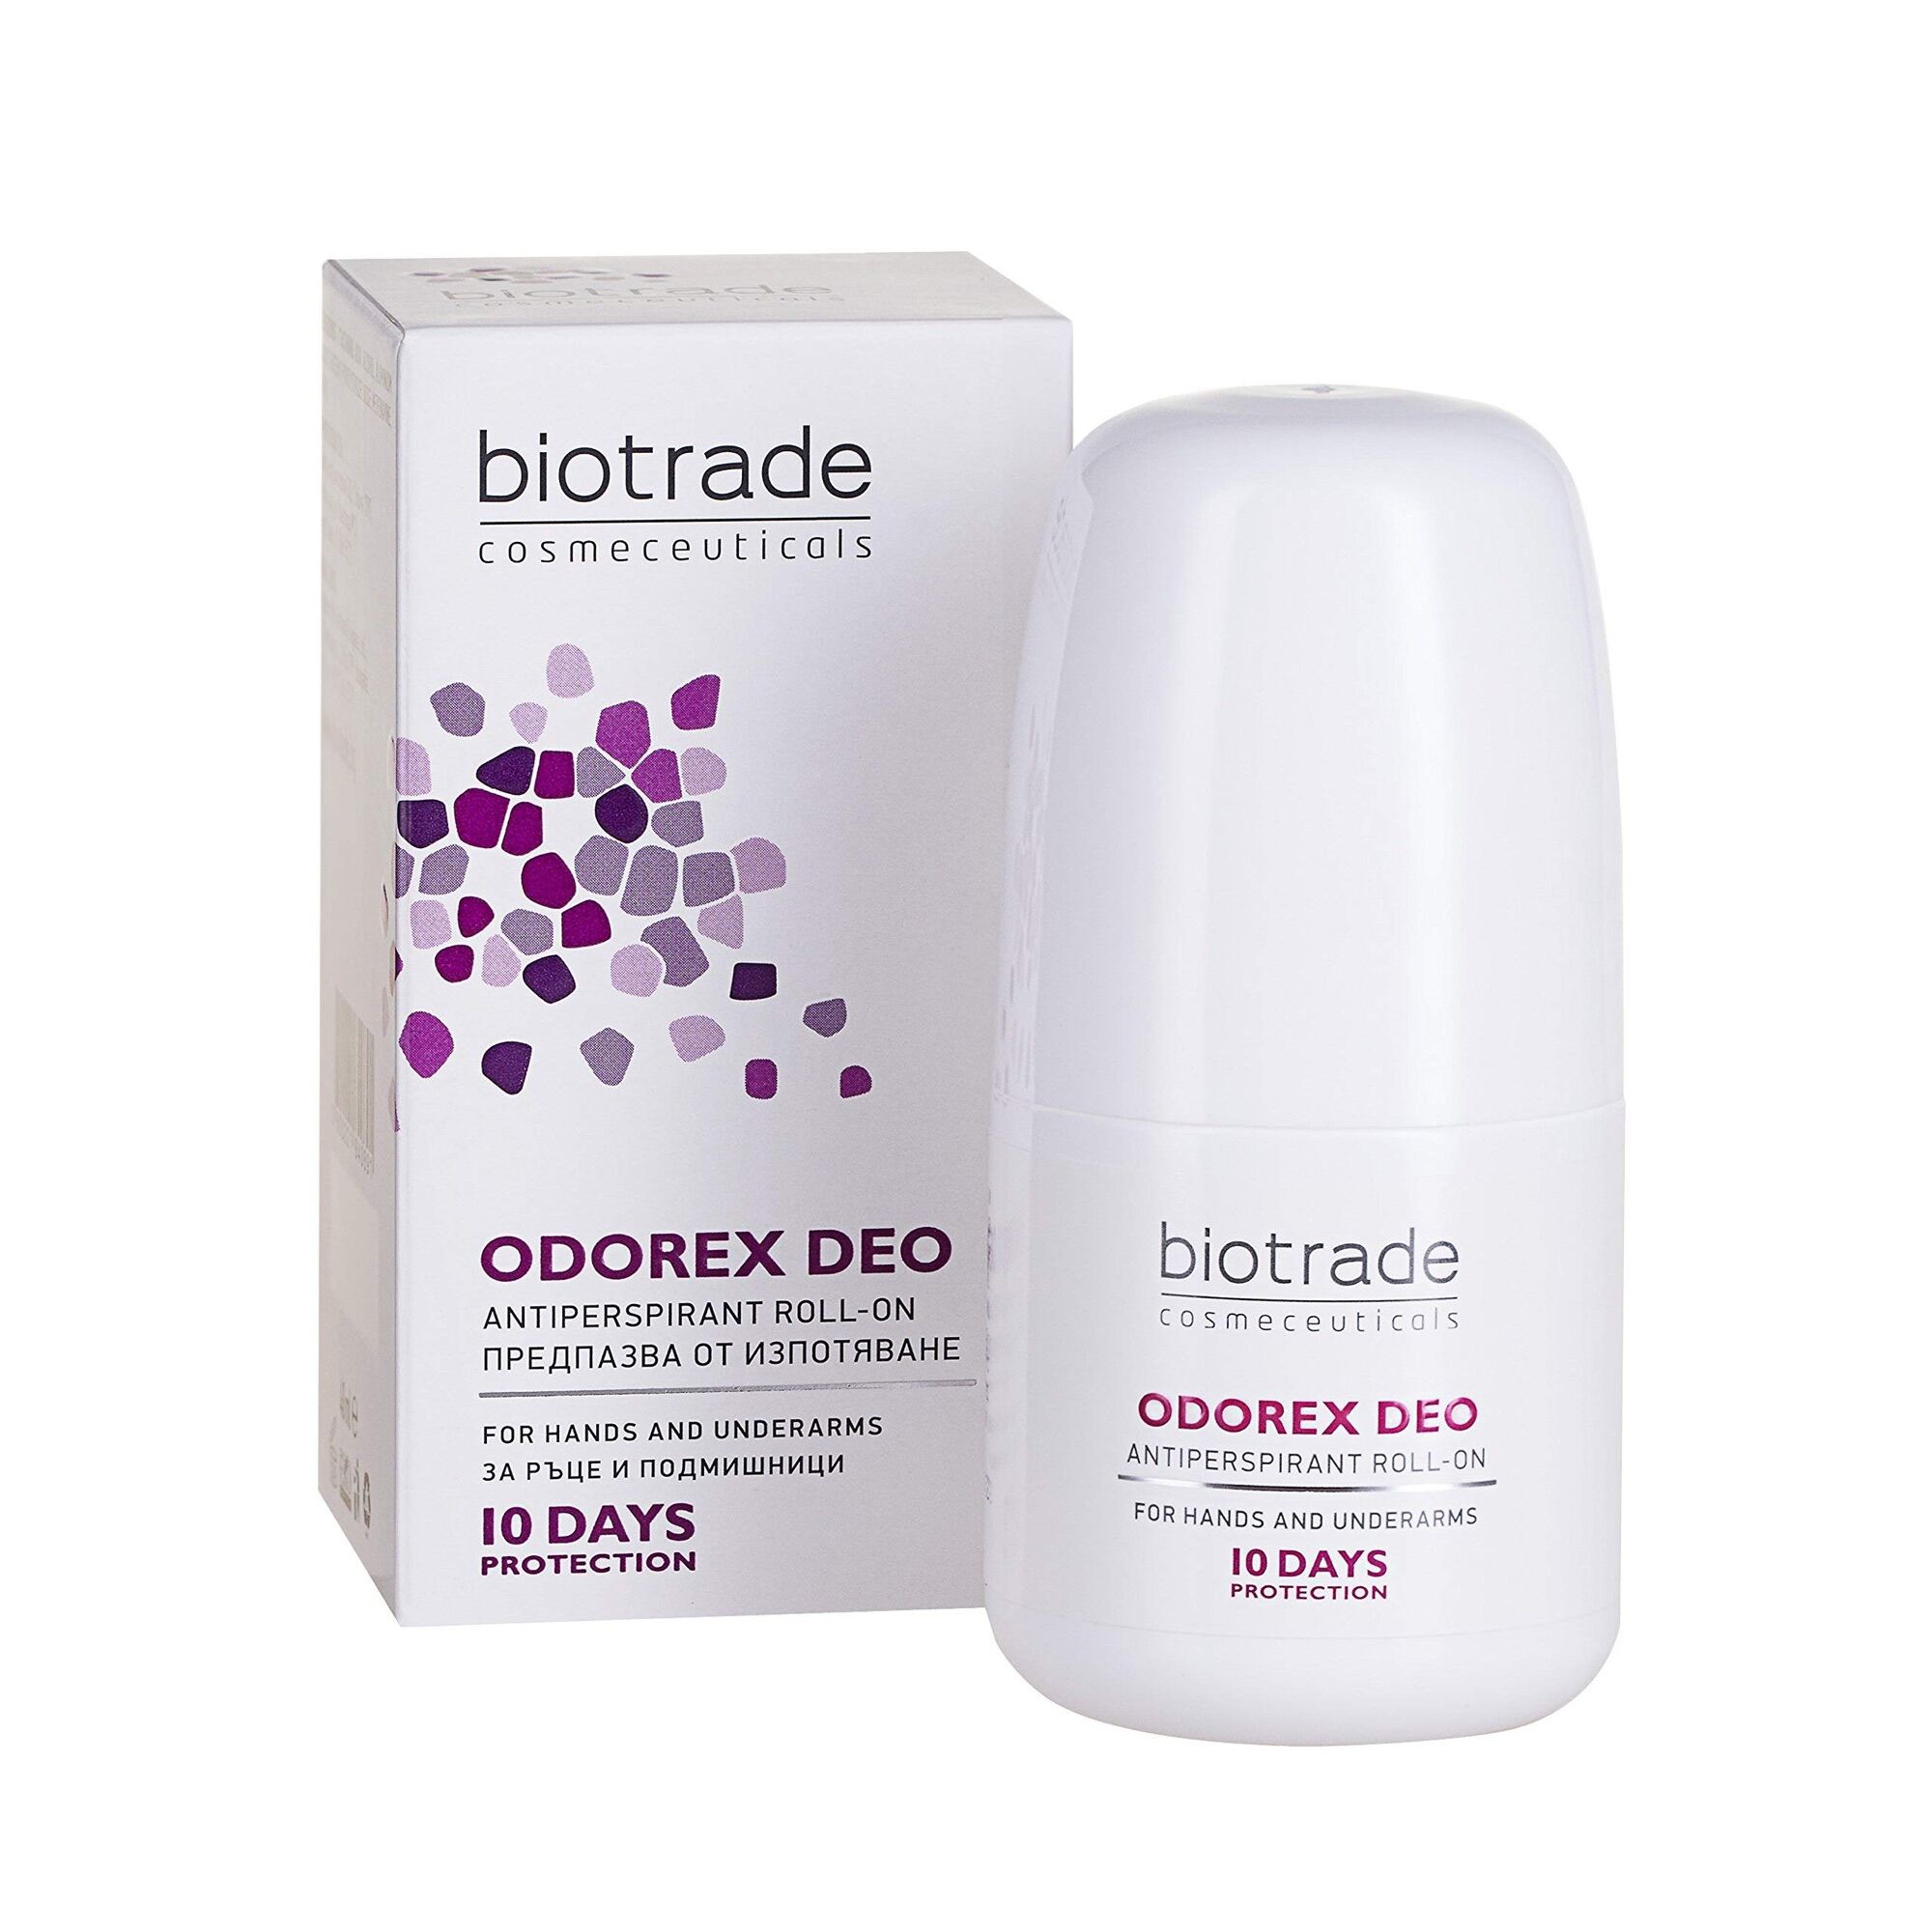 [HÀNG CÔNG TY] Lăn Khử Mùi Biotrade Odorex Deo Ngăn Mùi Cơ Thể Mồ Hôi Trong 10-14 Ngày